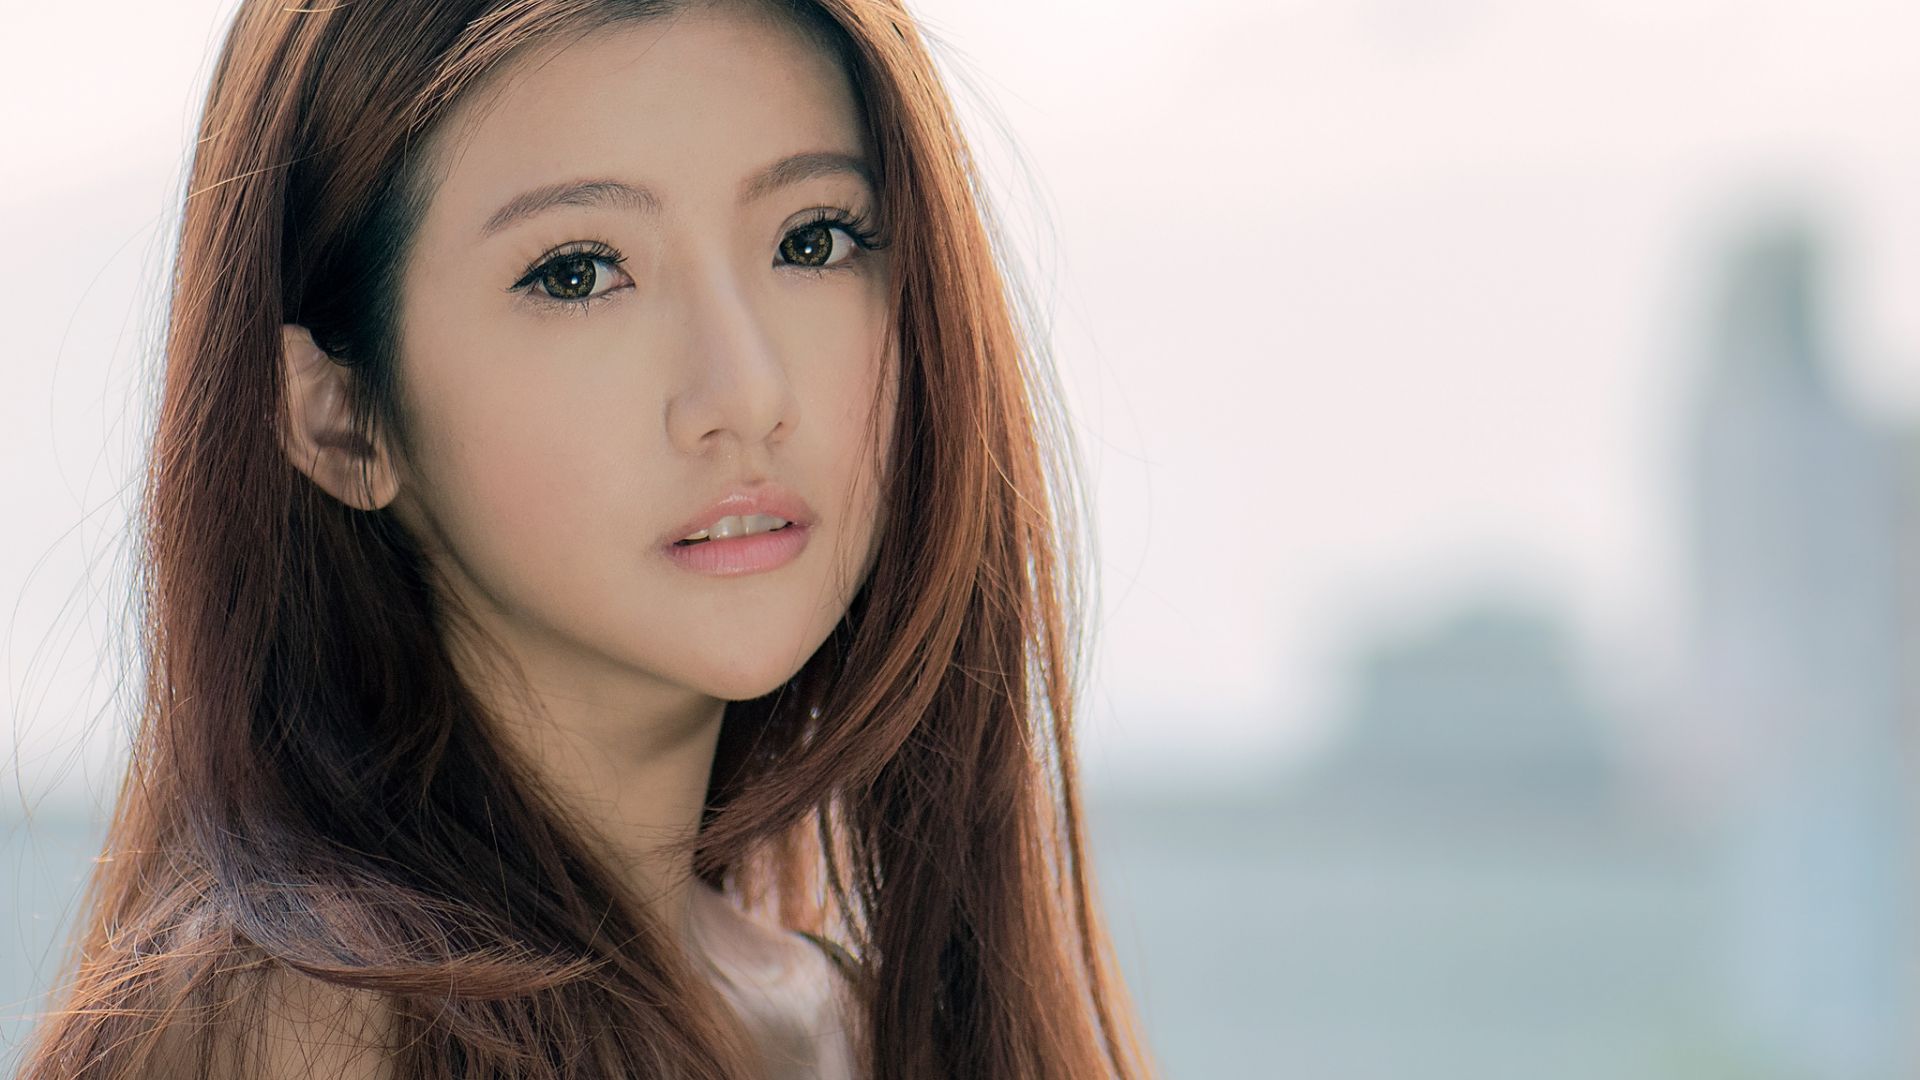 Wallpaper Cute, Face of Asian woman